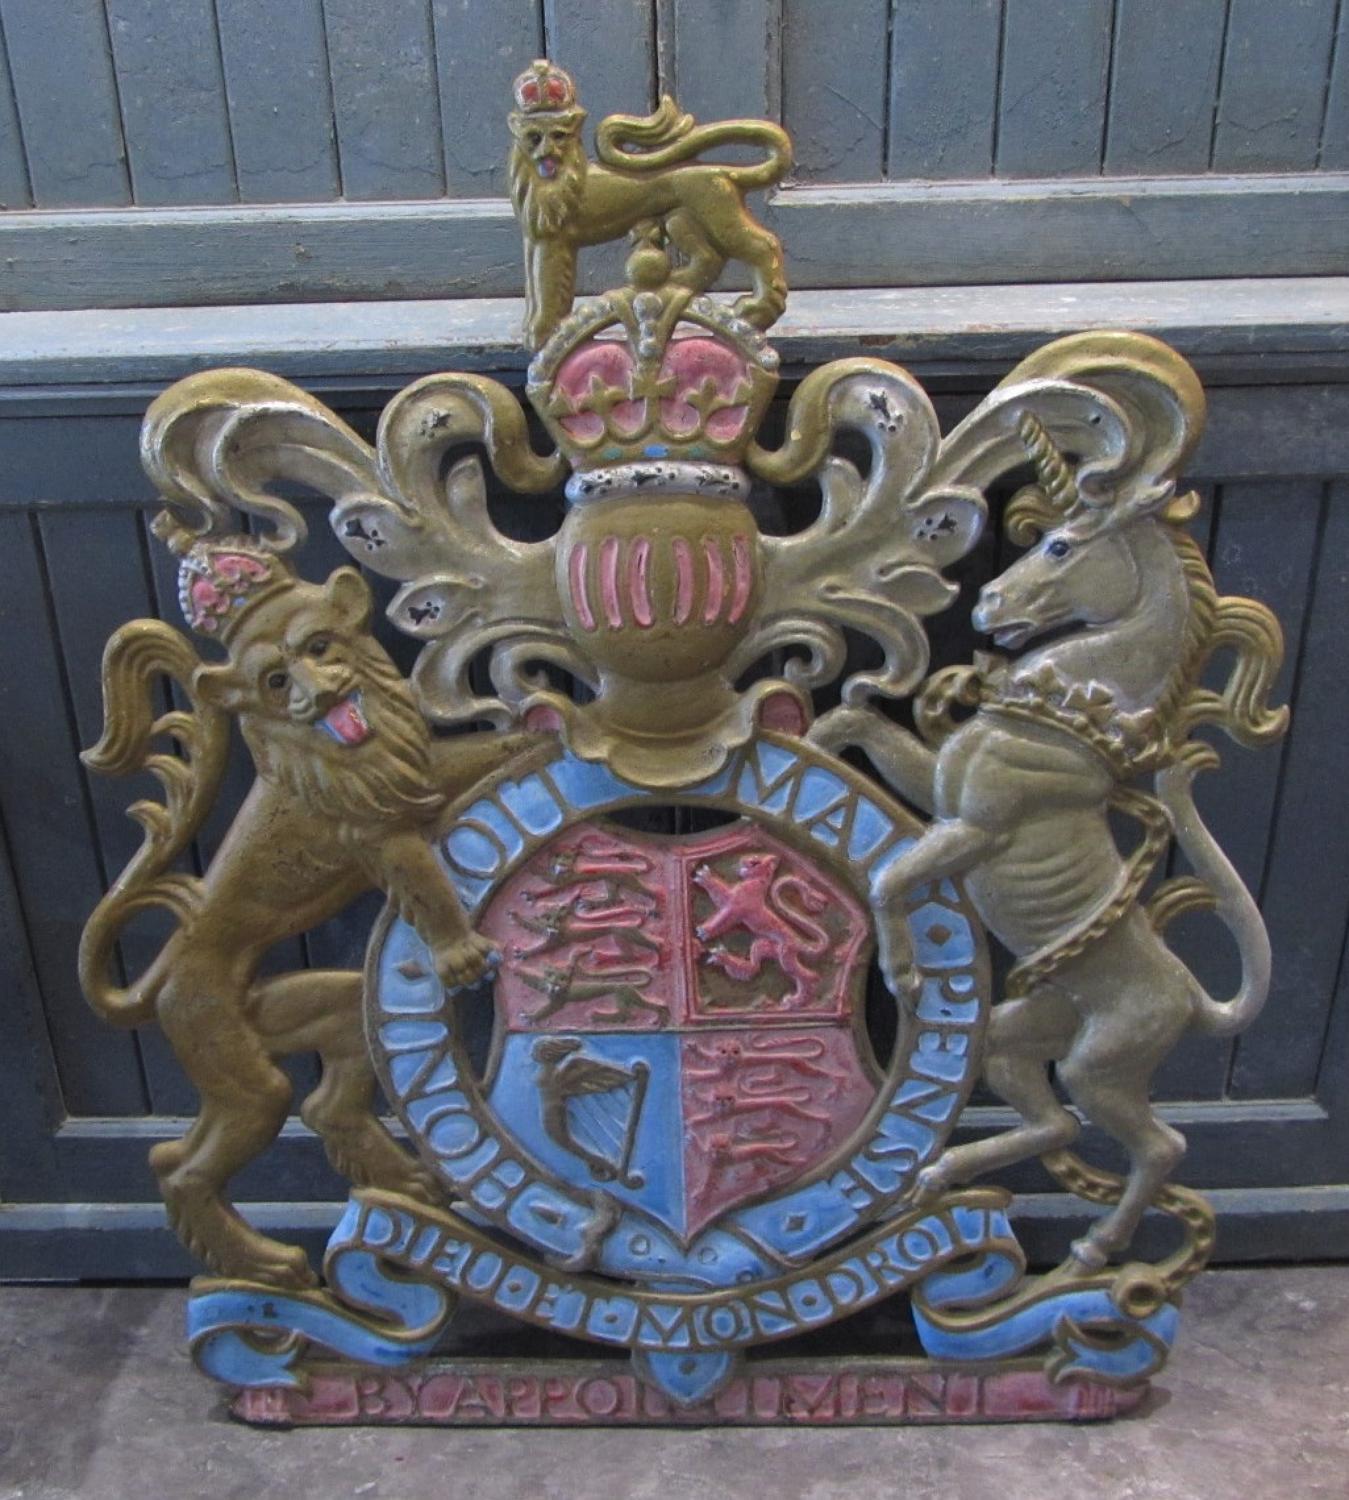 A cast iron Royal Warrant